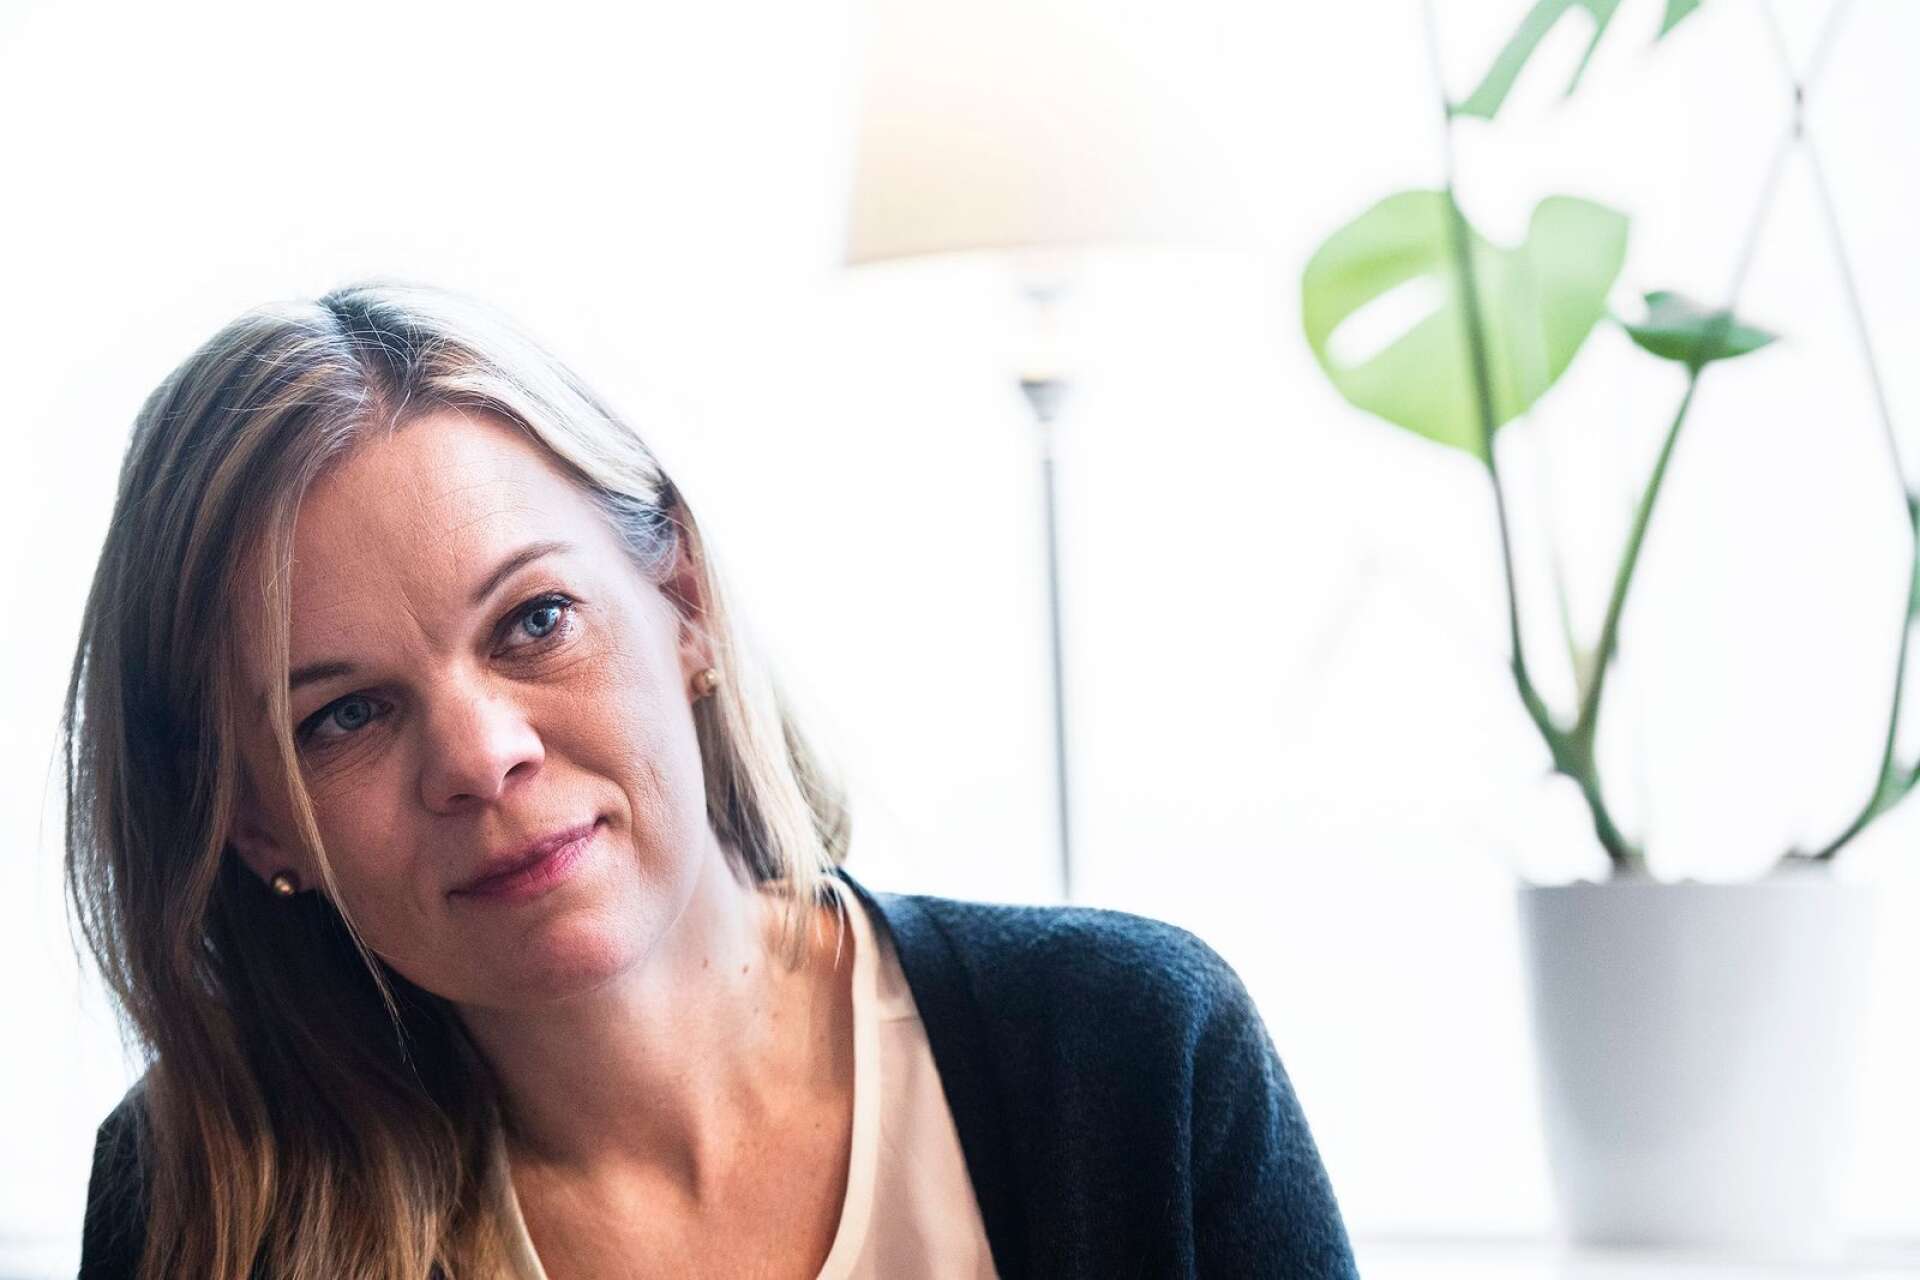 Kommunalrådet Kristina Lundeberg (C) svarar på kritiken från Sunne fastighets AB:s tidigare styrelseledamöter Henrik Lagerlöf och Anette Sätherberg.